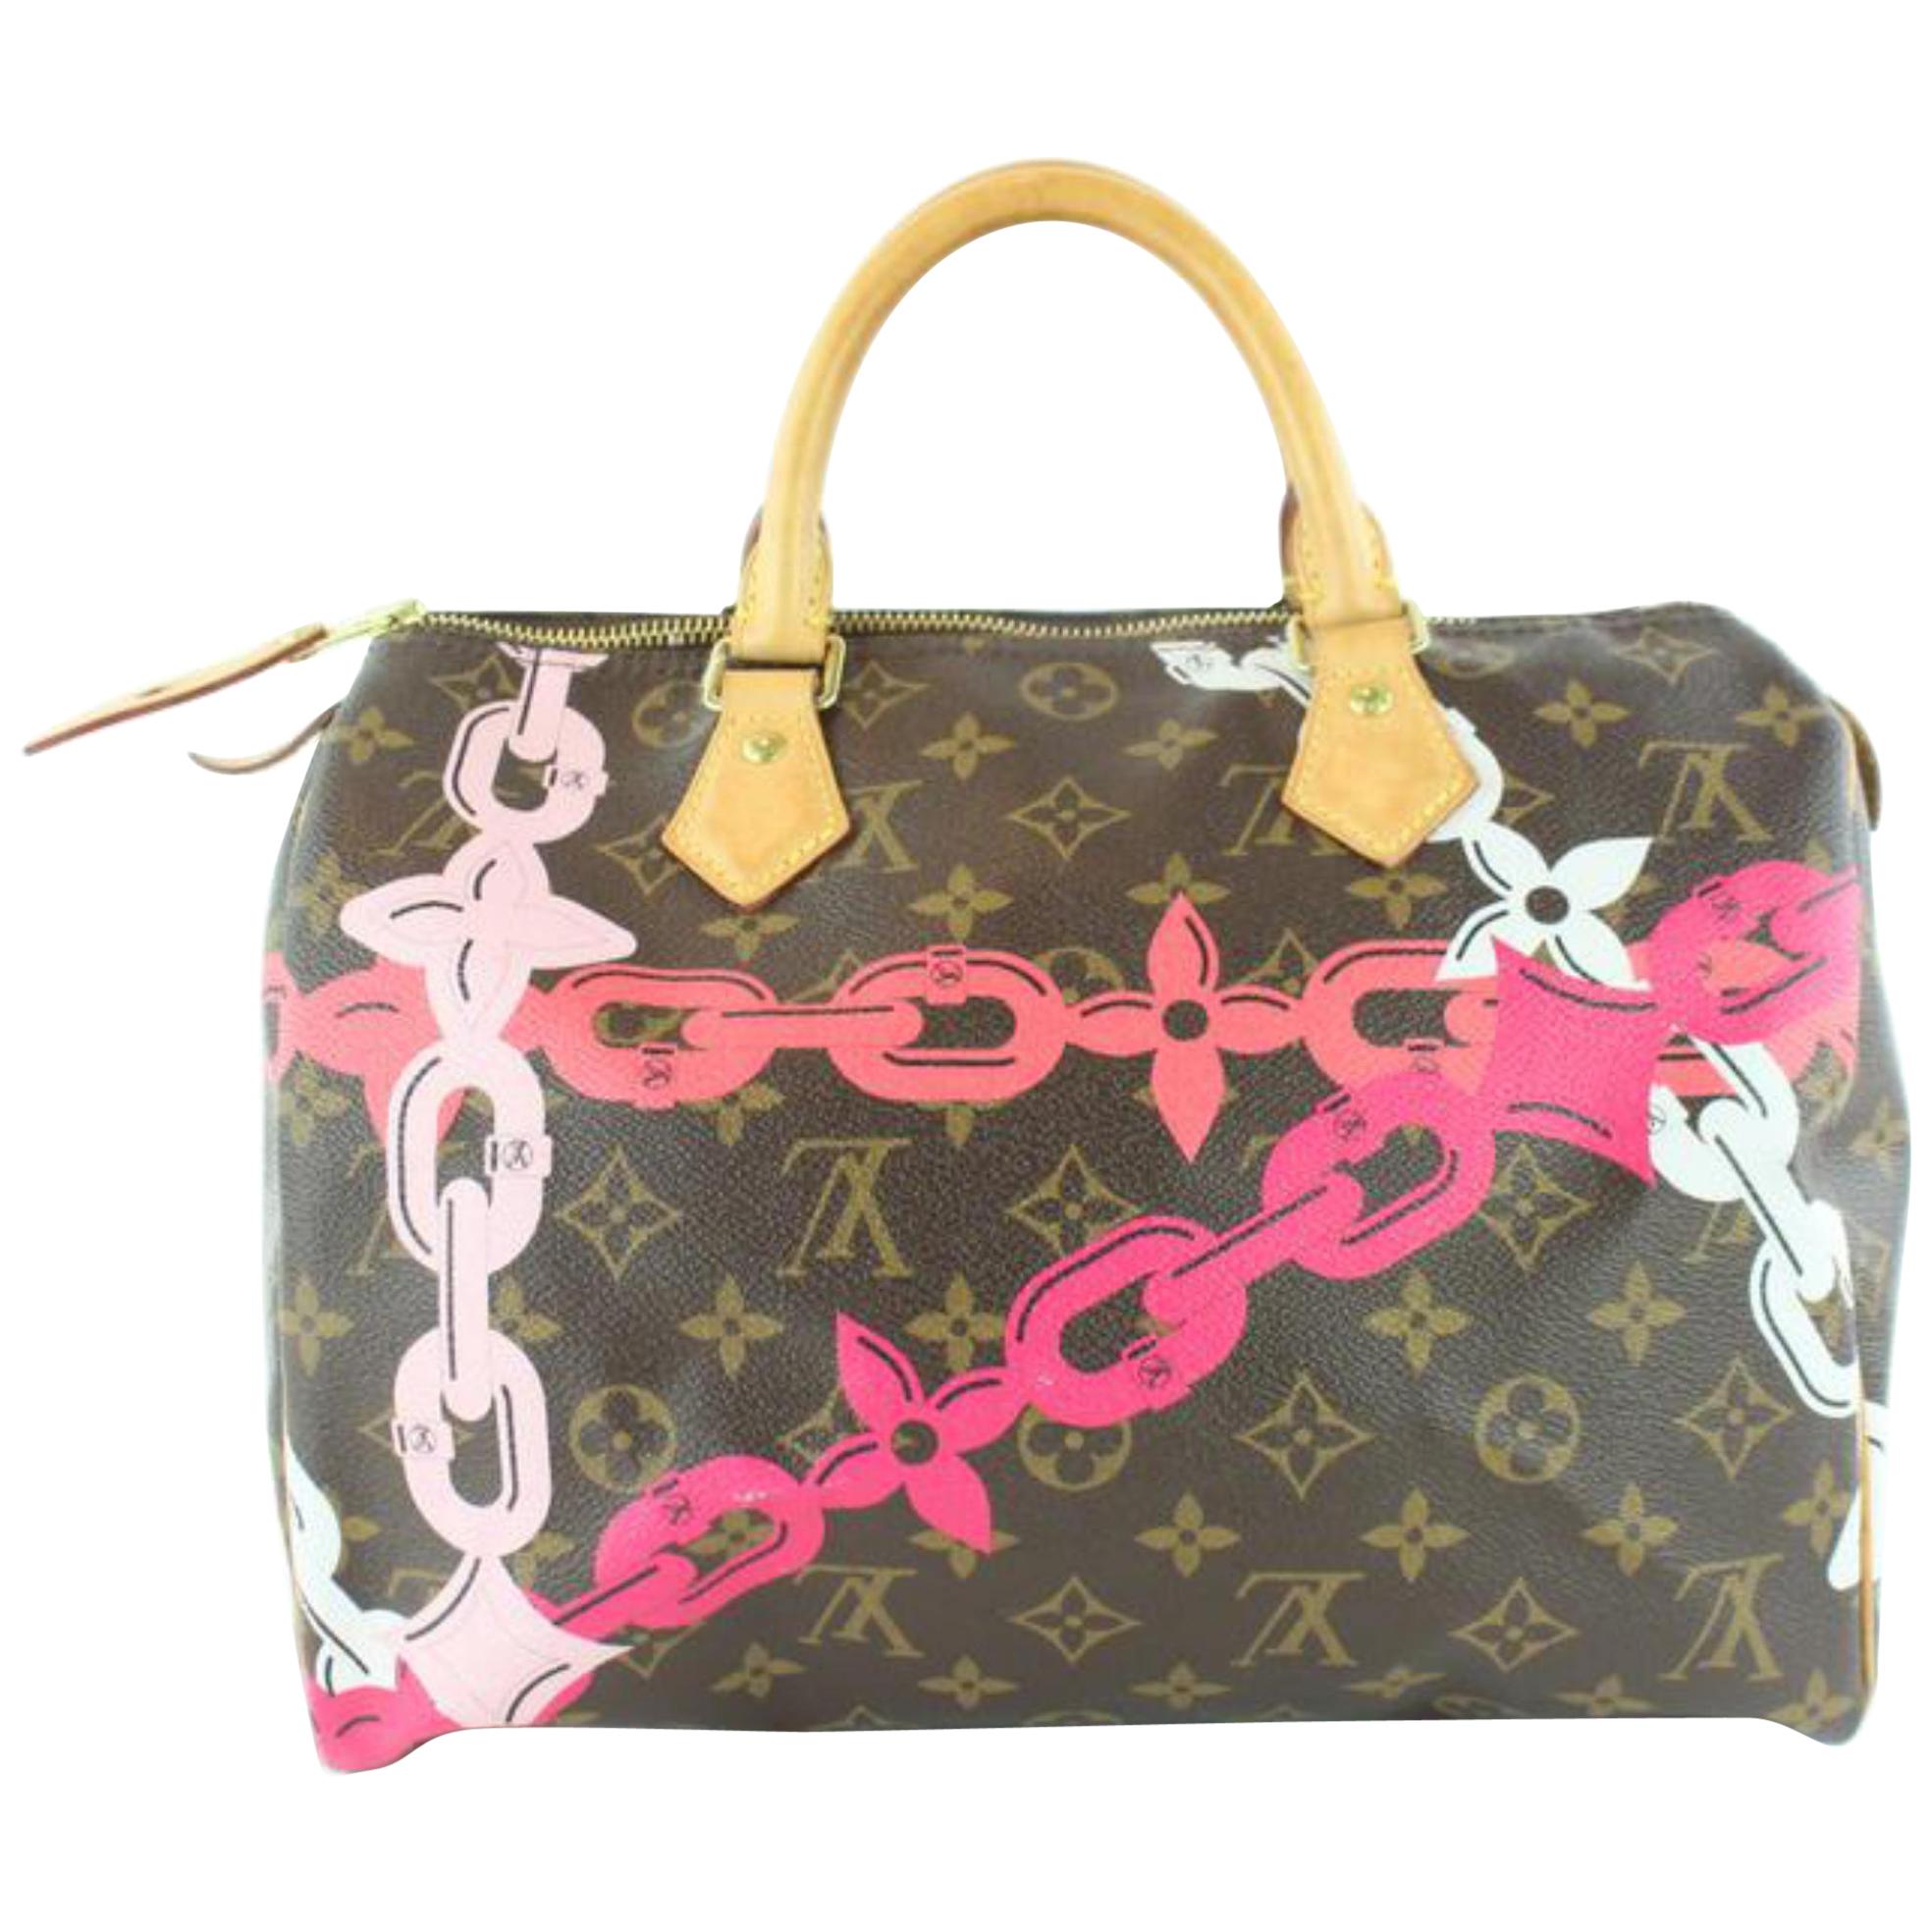 Louis Vuitton Speedy Limited Edition Chain Flower 30 22lz1129 Pink ...